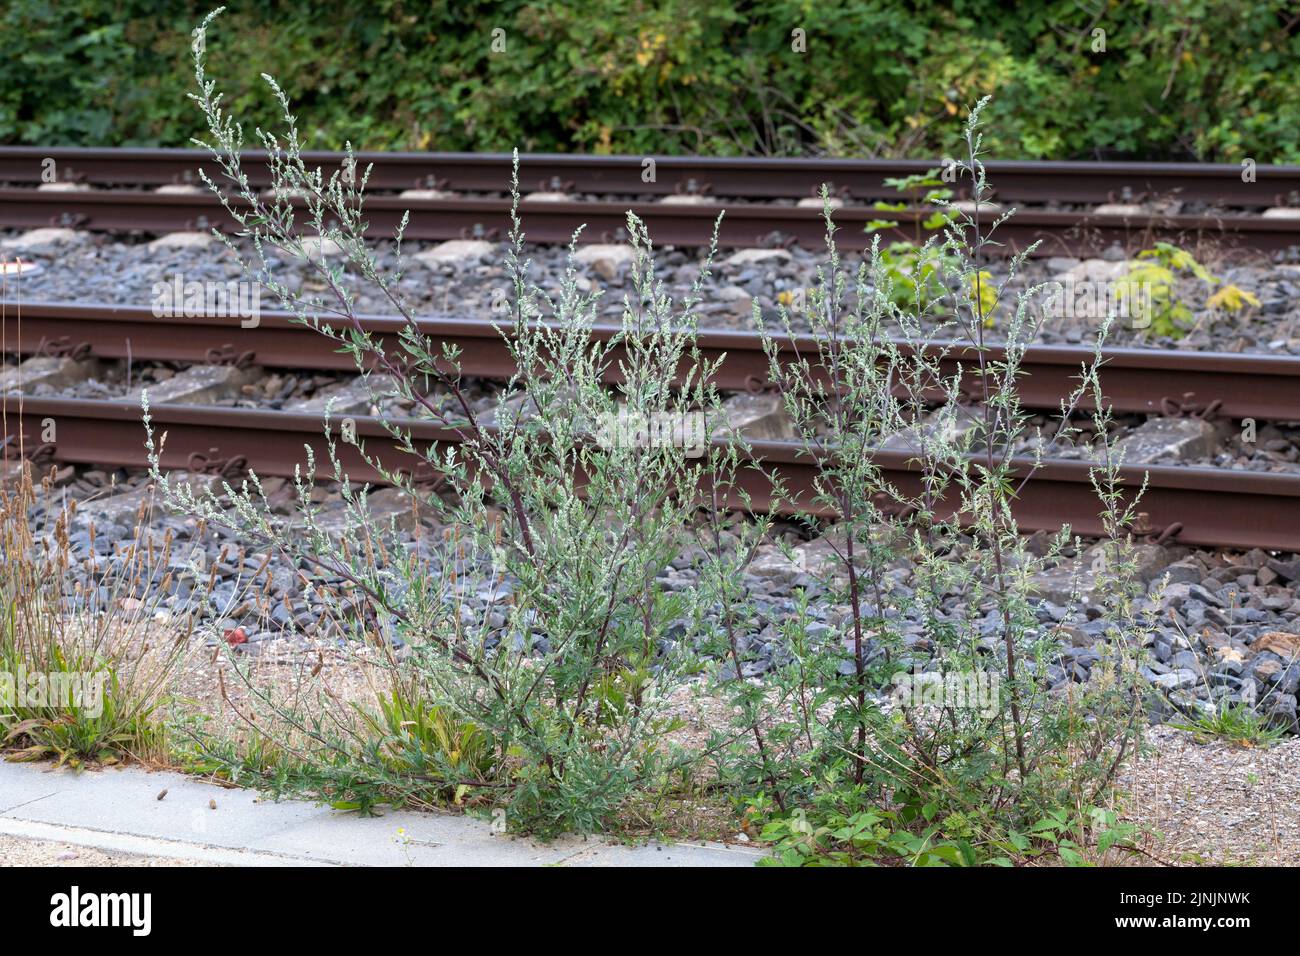 Moût commun, moût commun (Artemisia vulgaris), croissant dans un chemin de fer, Allemagne Banque D'Images